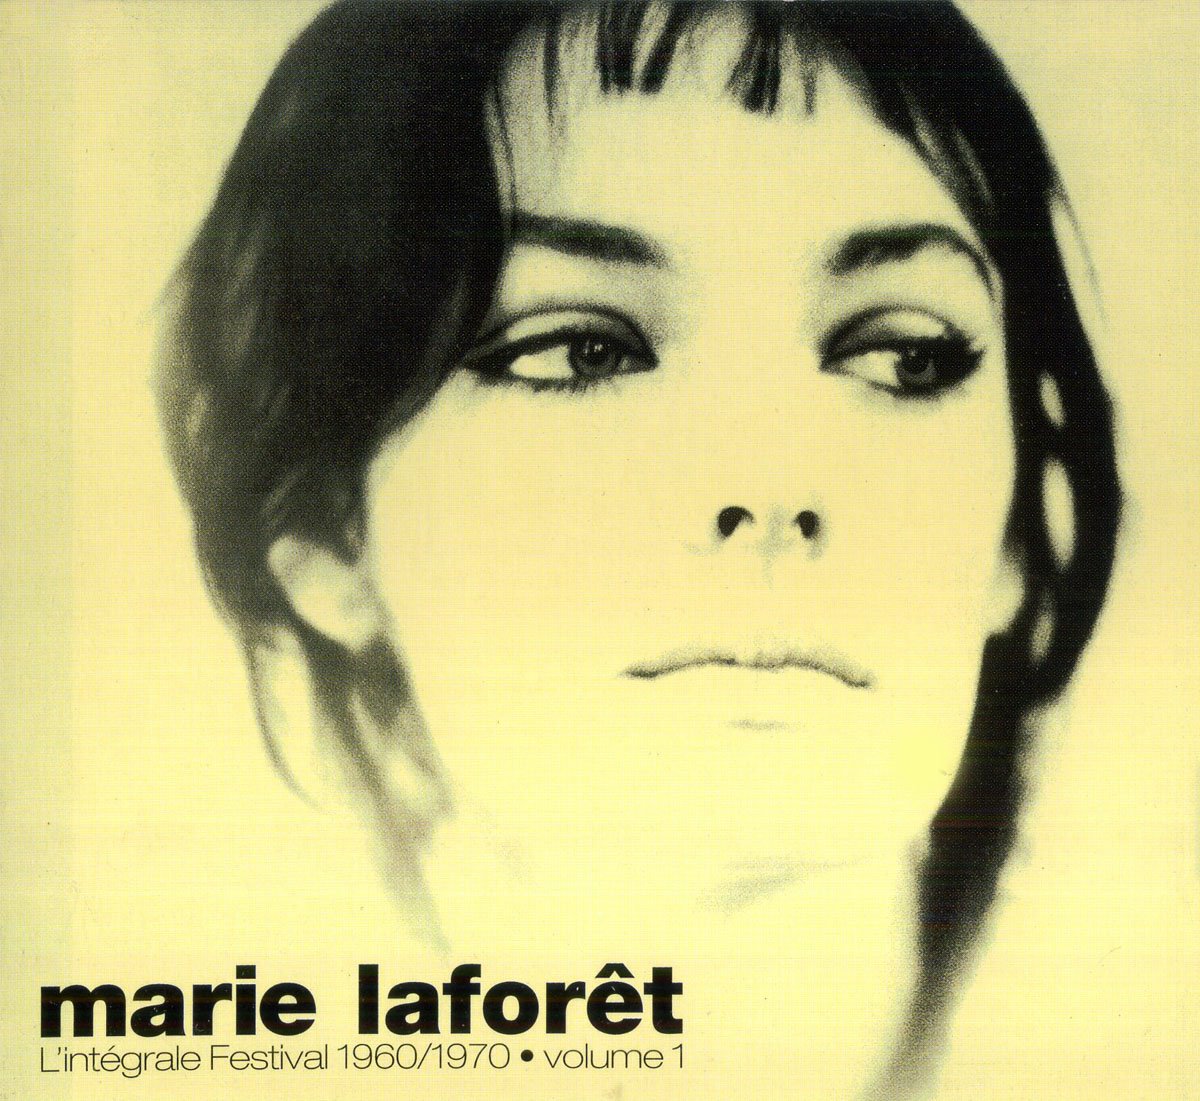 Marie douceur. Мари Лафоре 1964. Marie Laforet - l'integrale Festival 1960/1970. Viens, viens Мари Лафоре. Marie Laforet обложки альбомов.